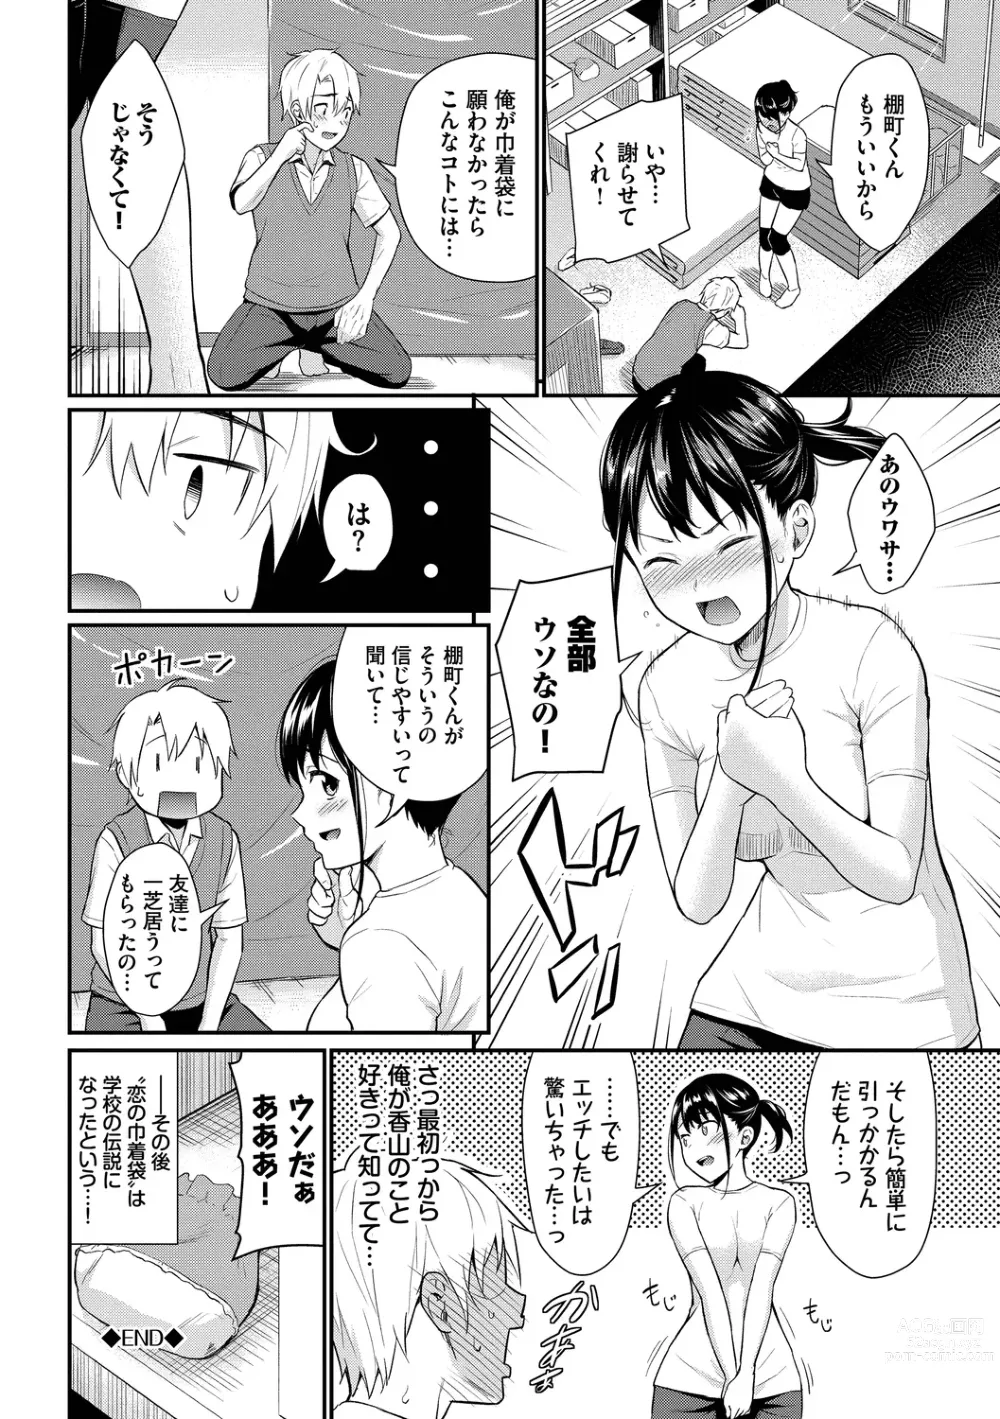 Page 186 of manga Hajirai Limit